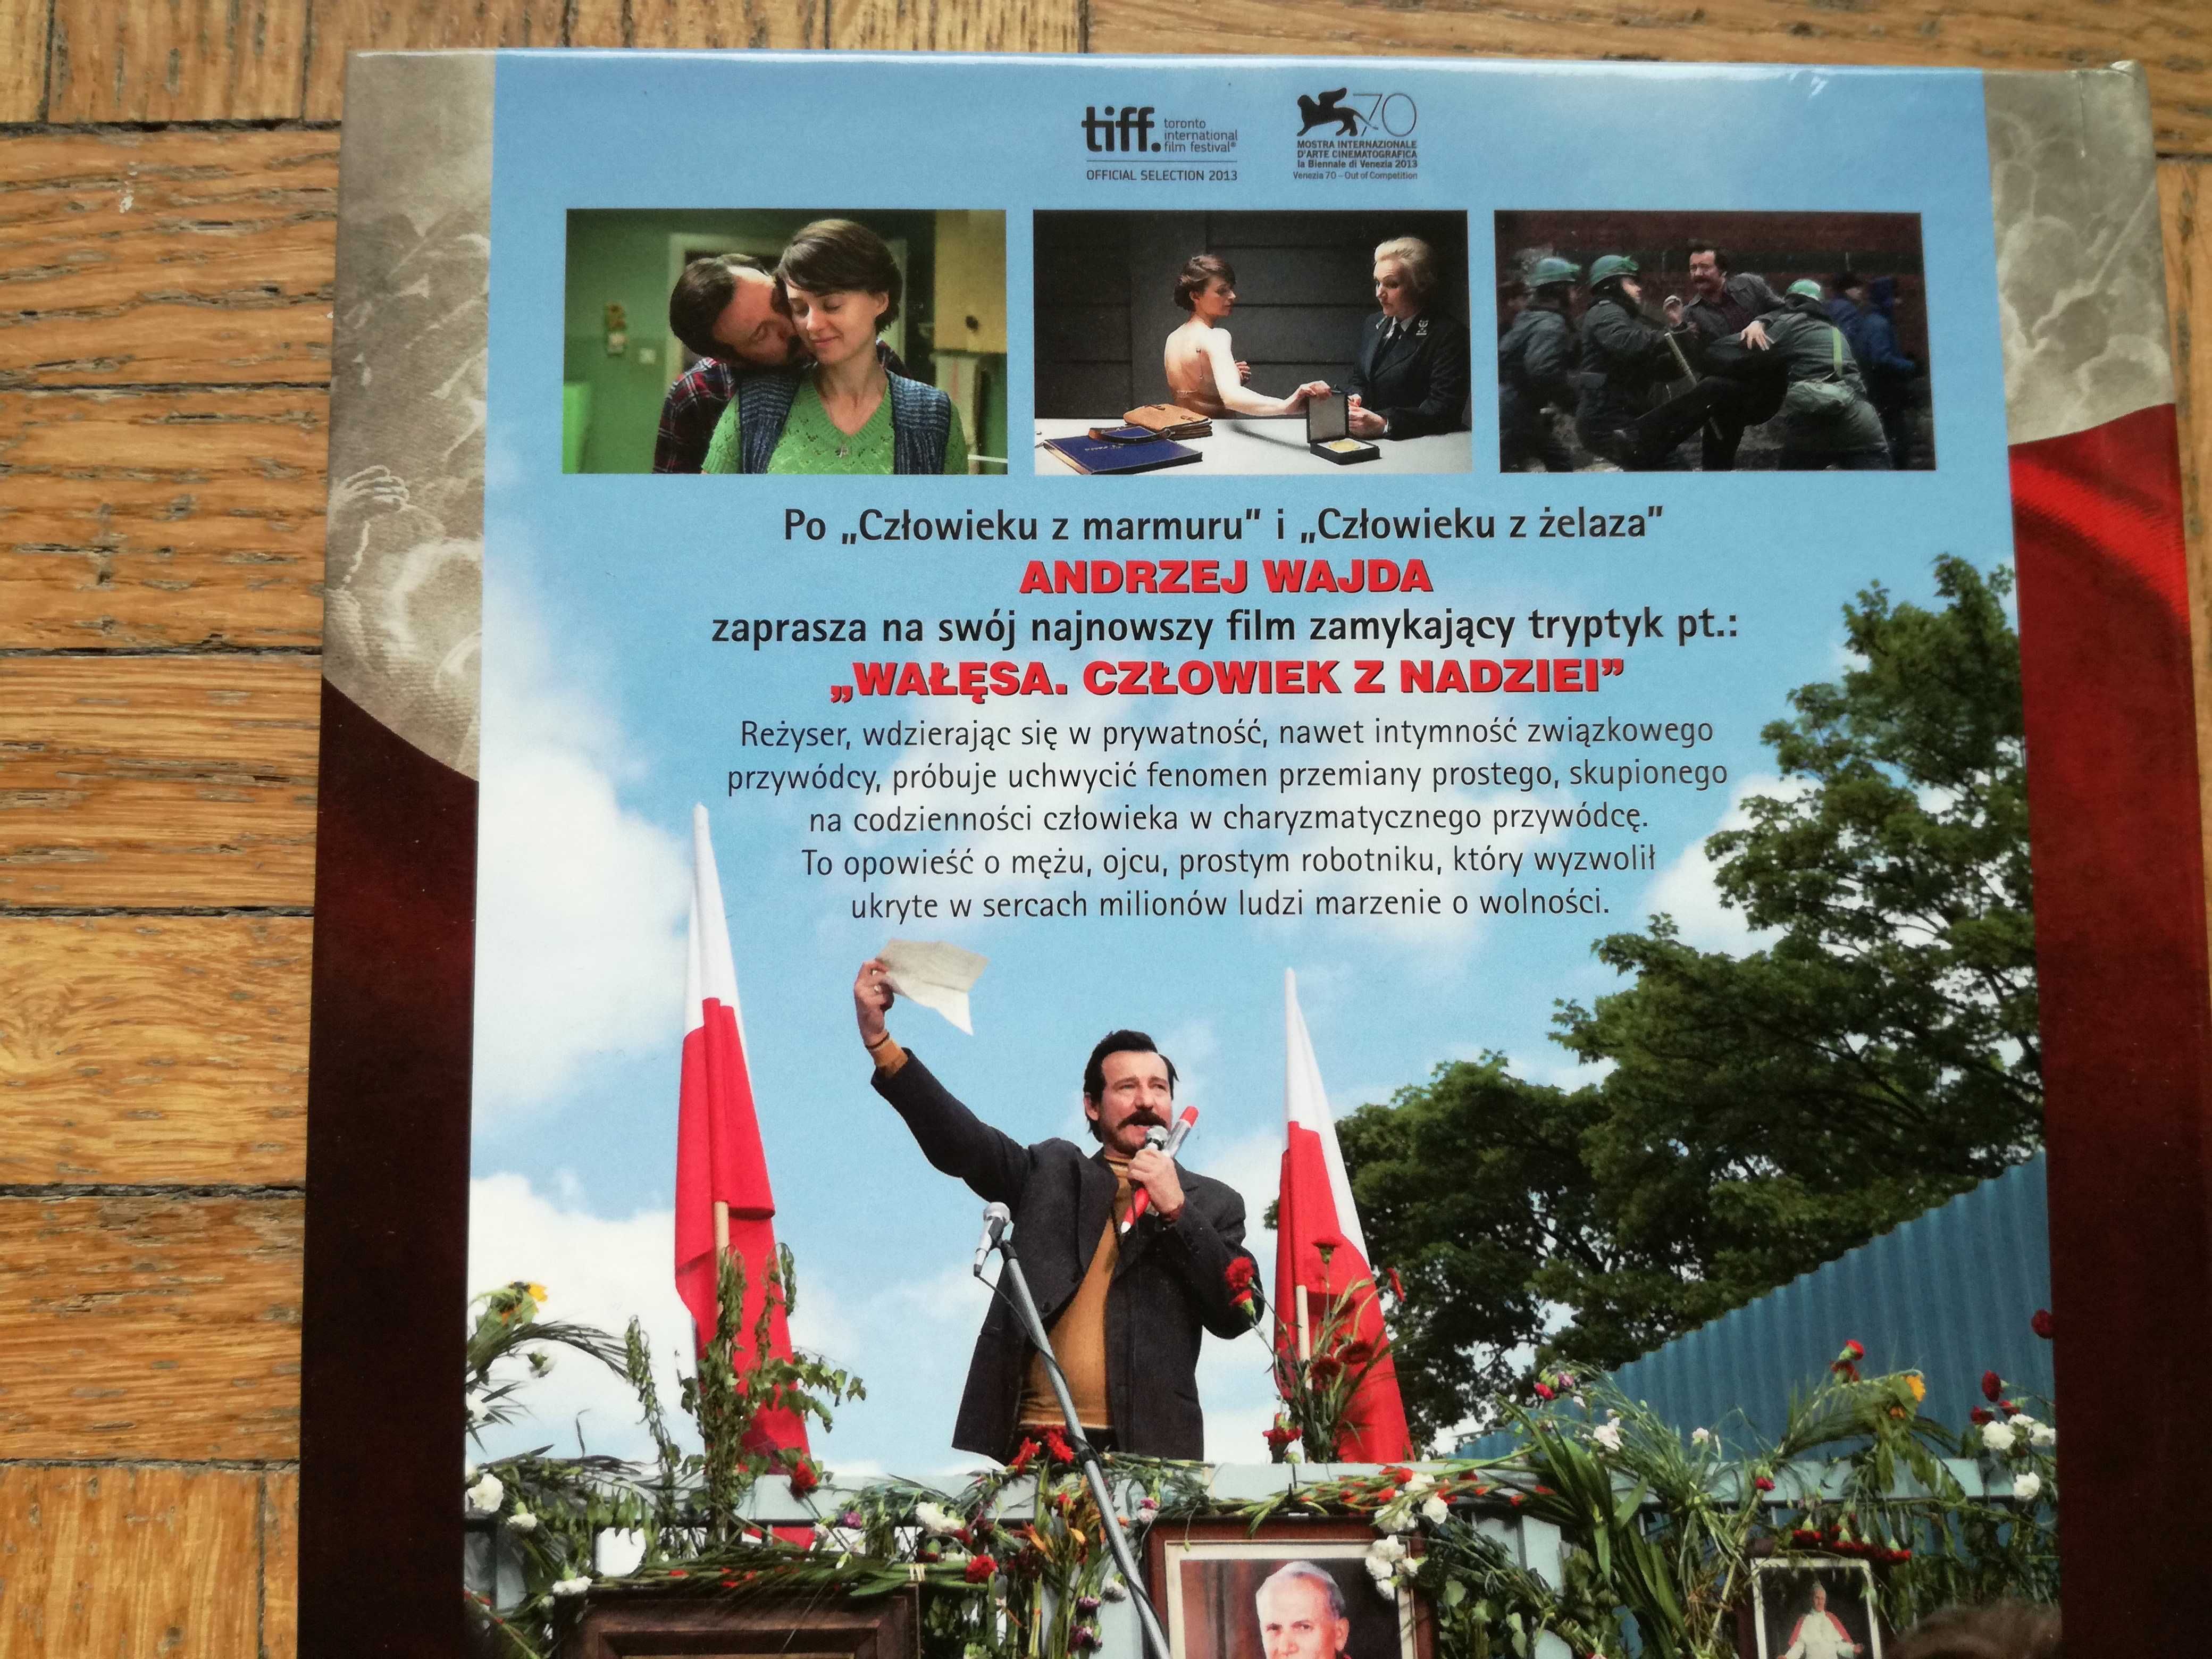 Wałęsa. Człowiek z nadziei, film DVD, 2013